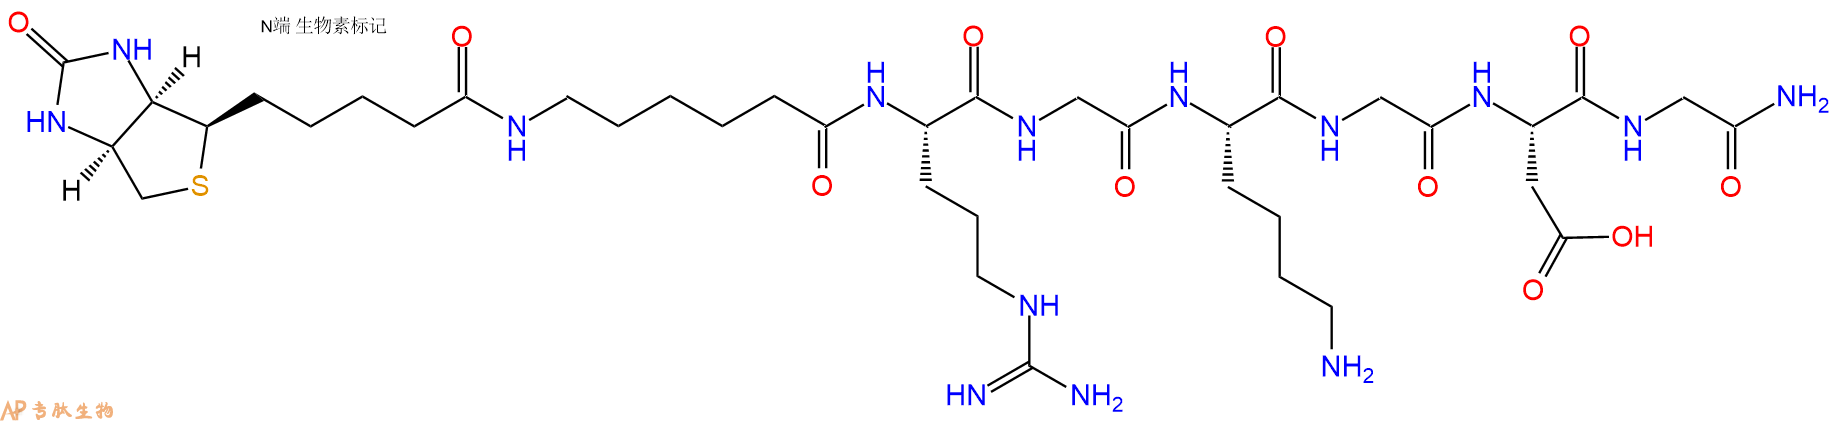 专肽生物产品Biotin-Ahx-Arg-Gly-Lys-Gly-Asp-Gly-NH2